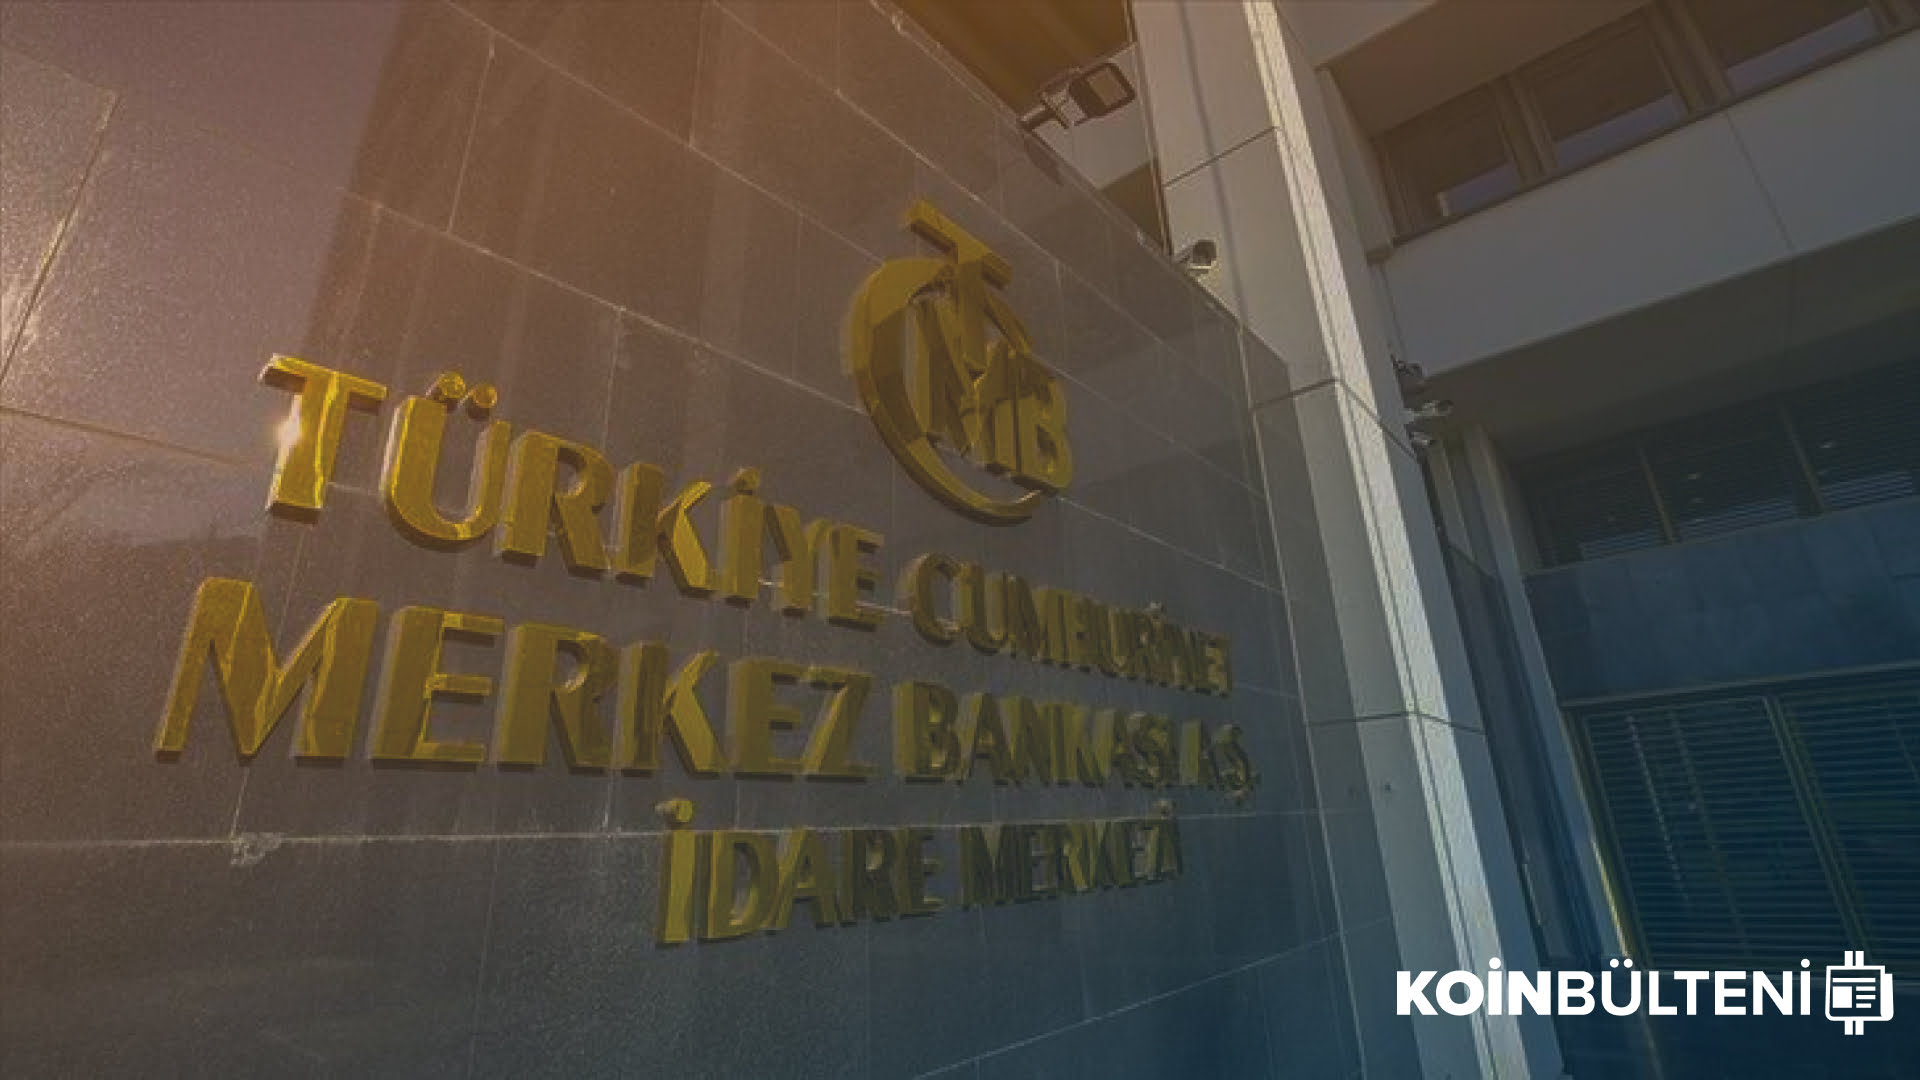 tcmb-turkiye-merkez-bankasi-ppk-toplanti-dolar-doviz-lira-turk